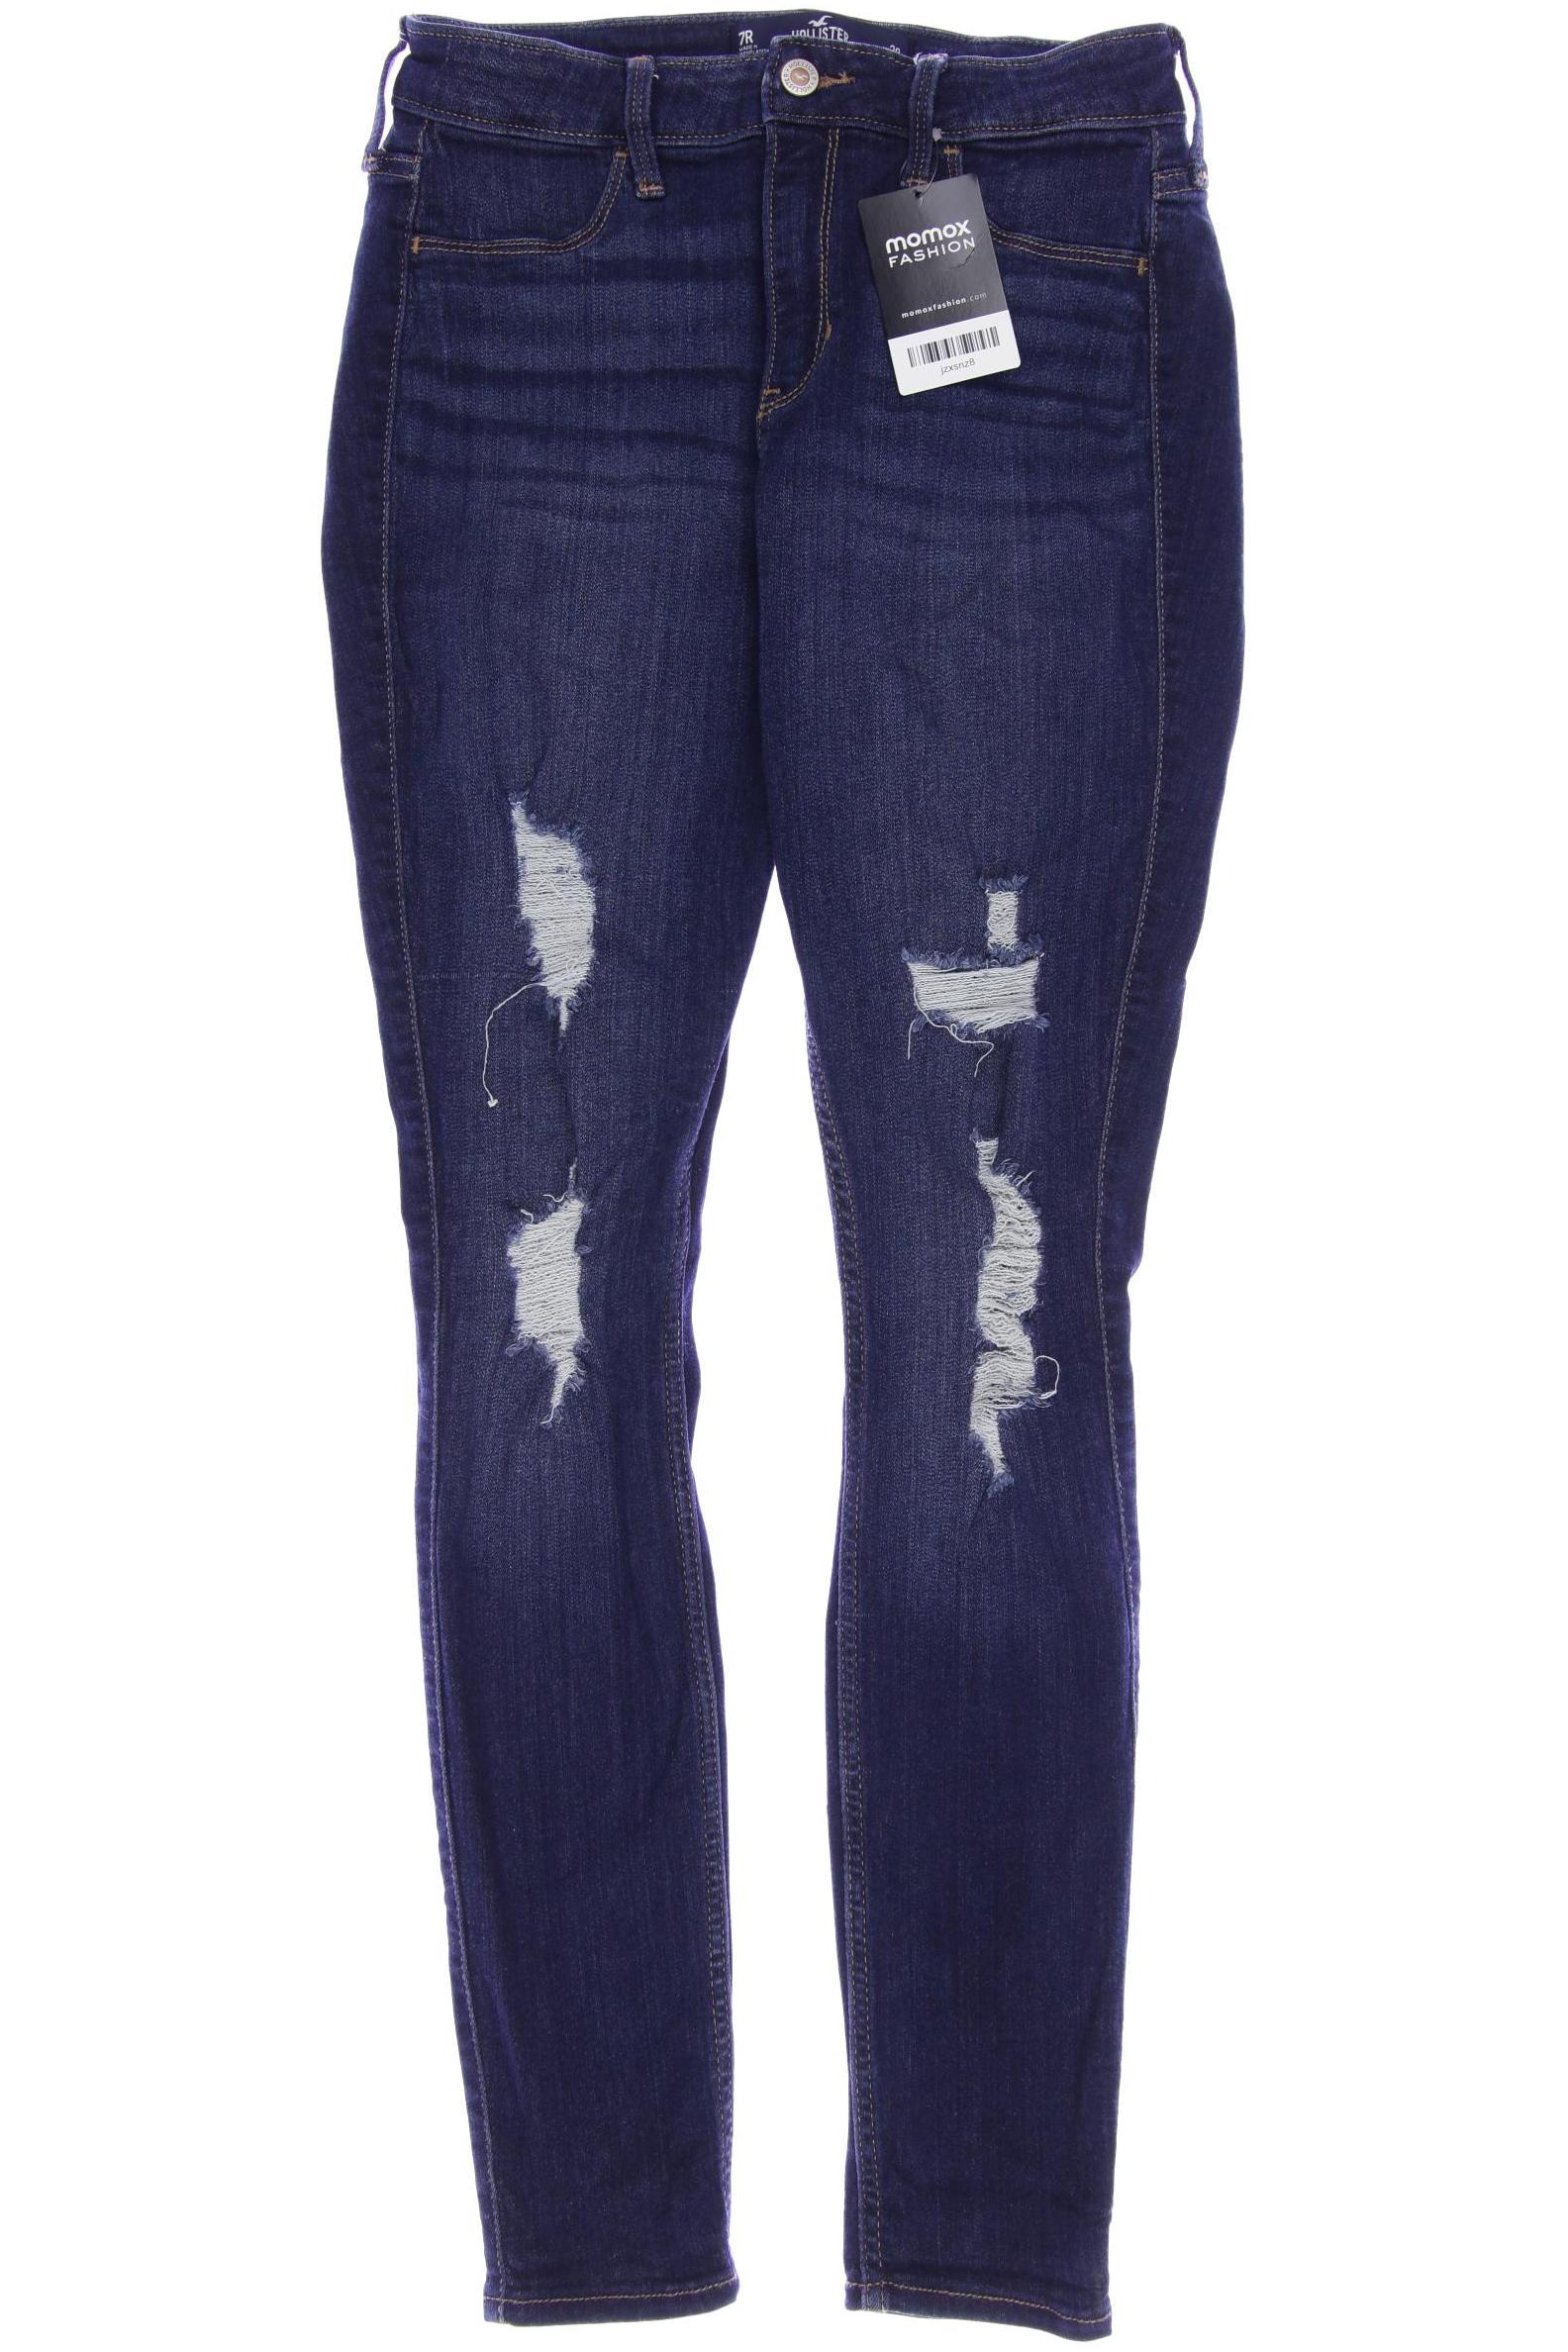 Hollister Damen Jeans, marineblau von Hollister